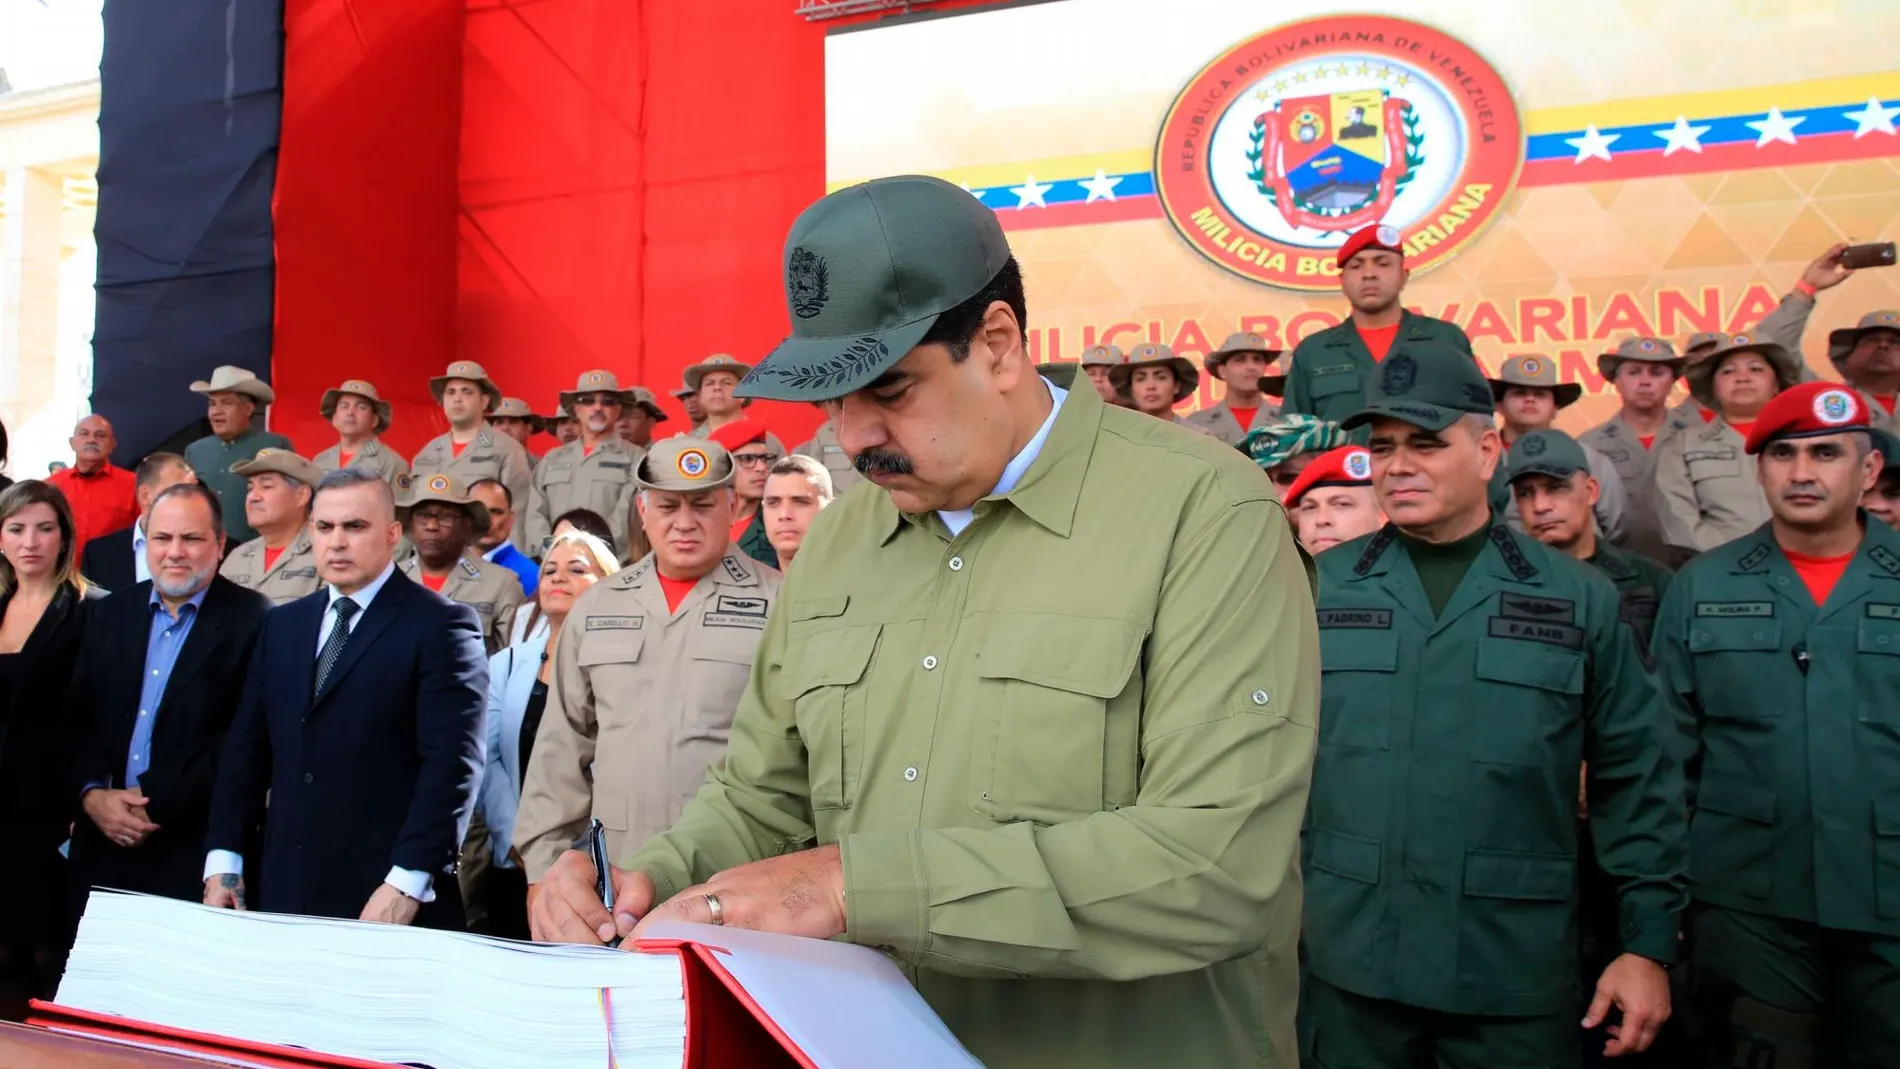 El presidente de Venezuela, Nicolás Maduro, durante un acto con militares hoy en Caracas / Efe